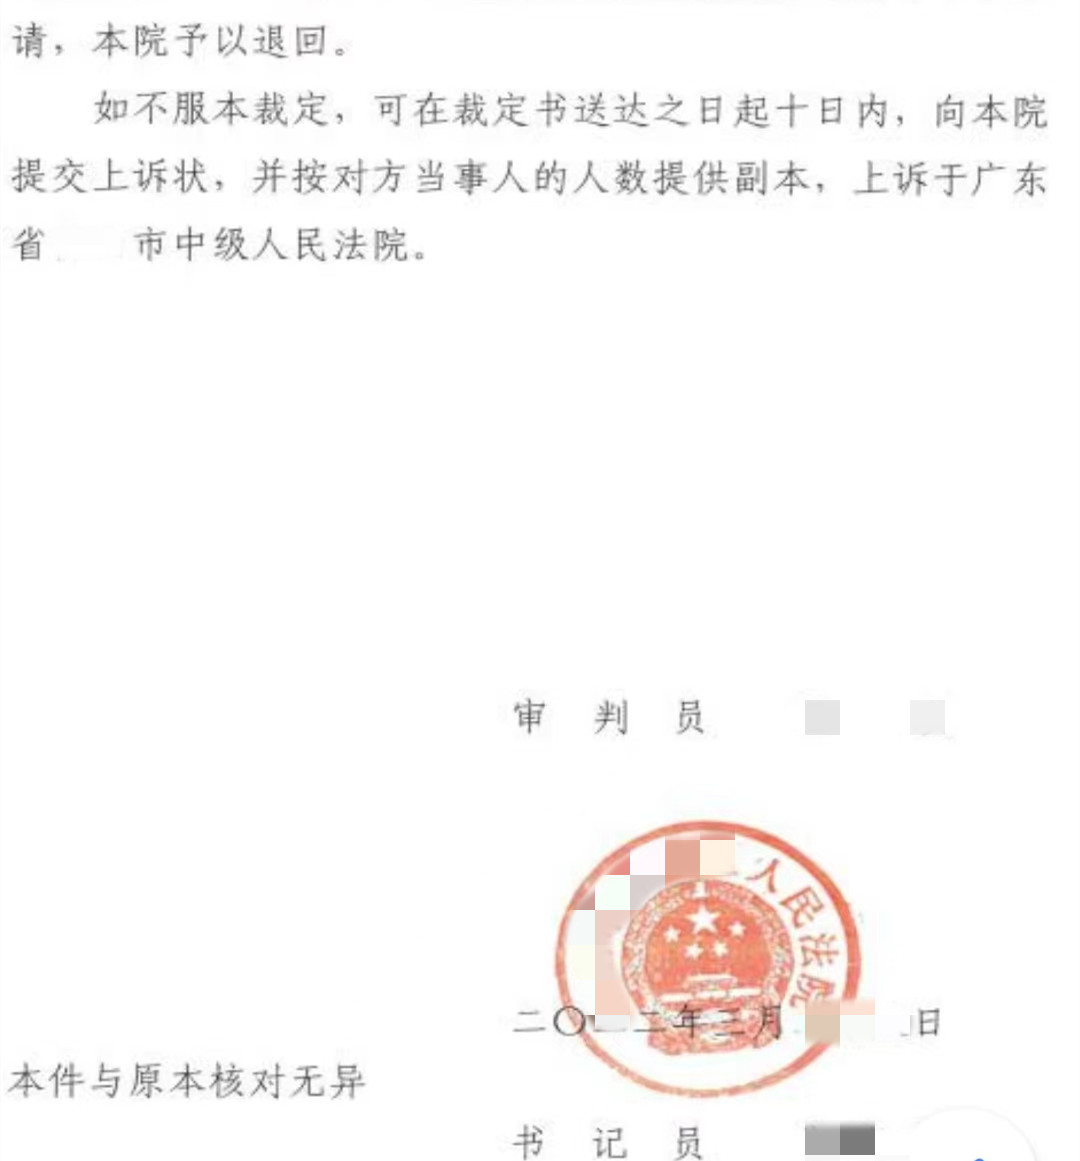 广东法院判决玖富出借人诉担保公司案件败诉 网贷信息中介并非债务方